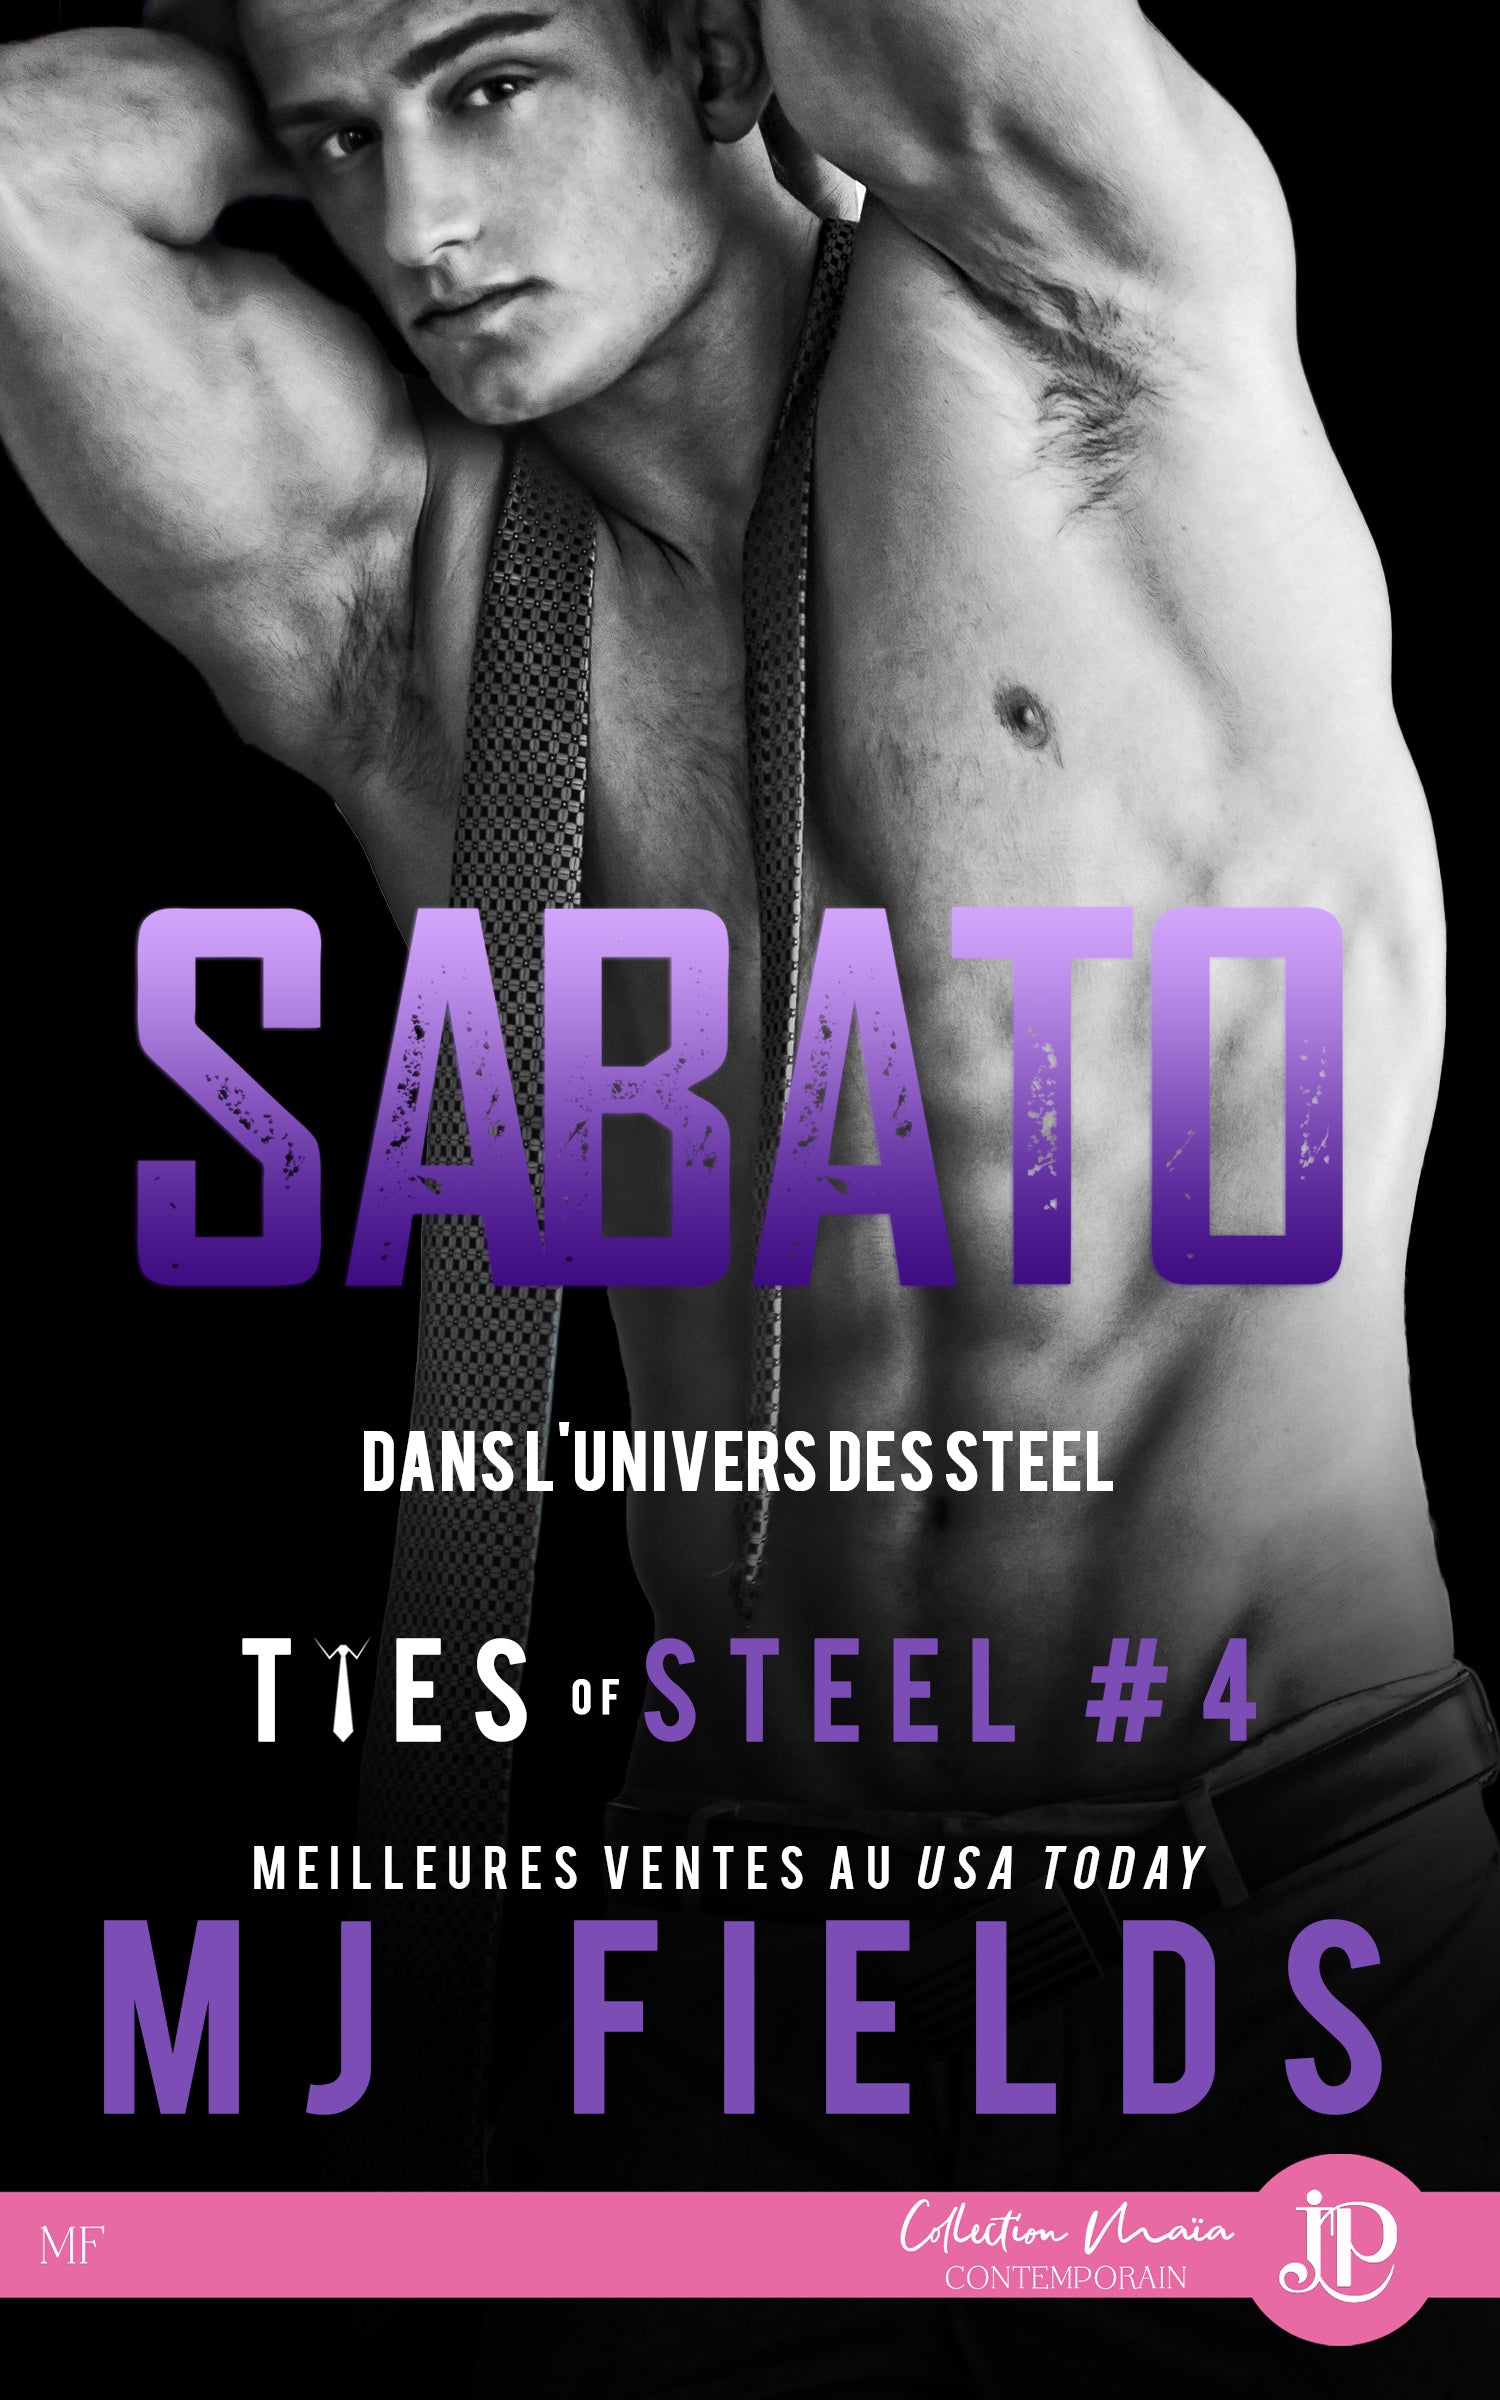 Ties of steel #4-Sabato